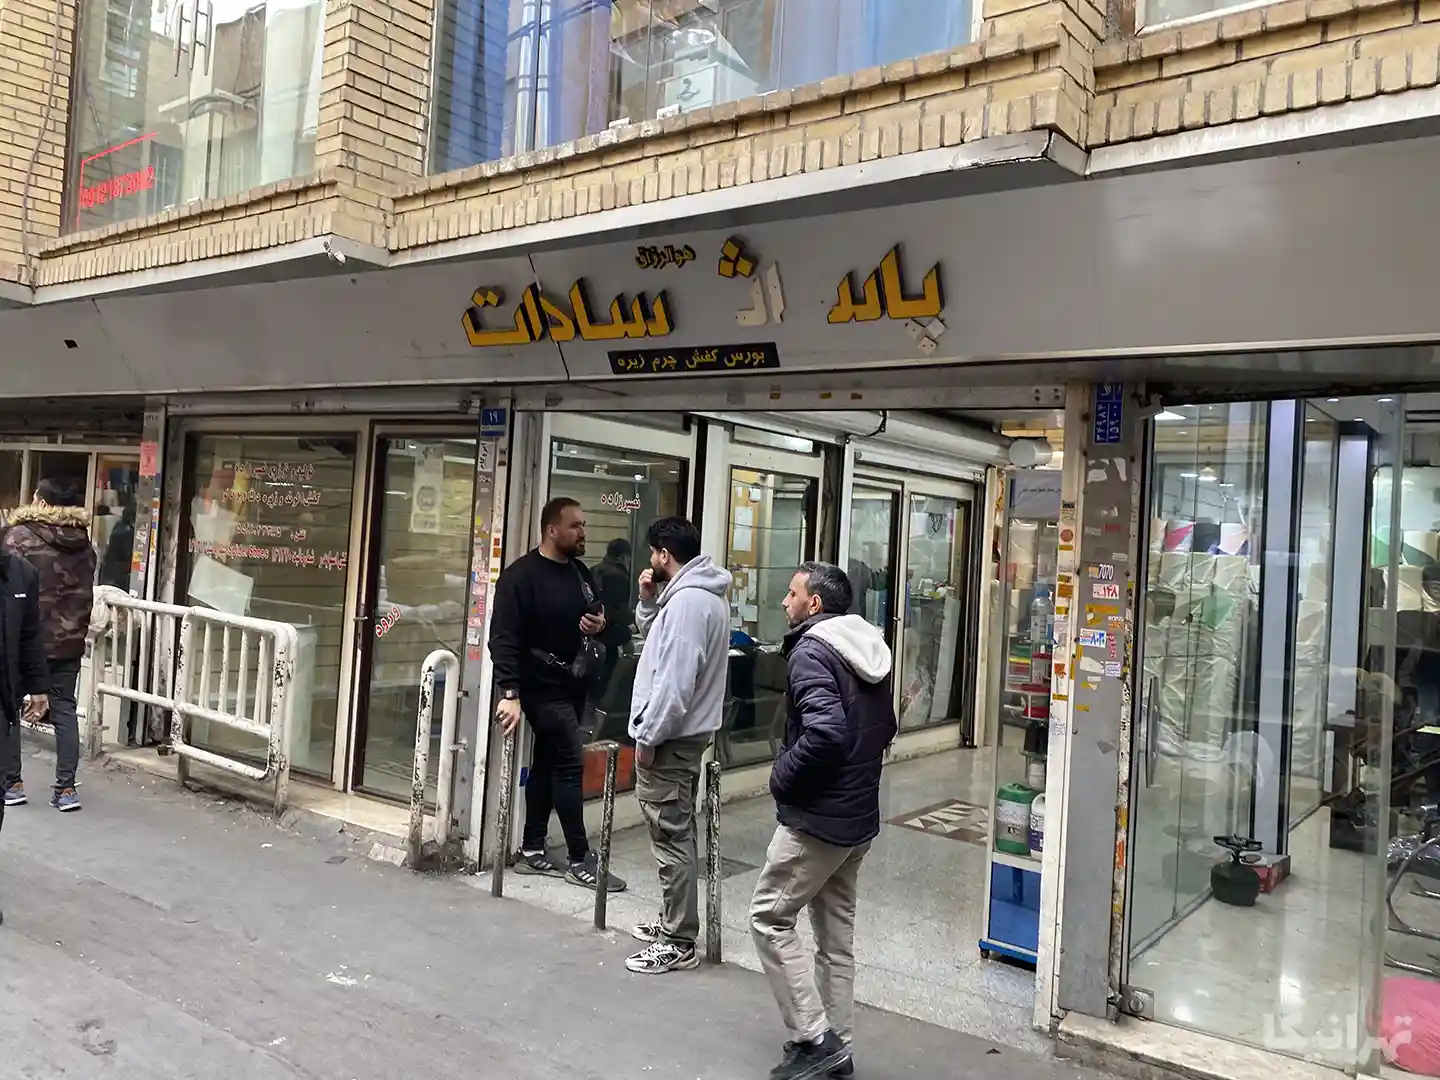 دو مرد در ورودی پاساژ سادات بازار ایستاده و مردان دیگری در حال تردد در کوچه منوچهرخانی